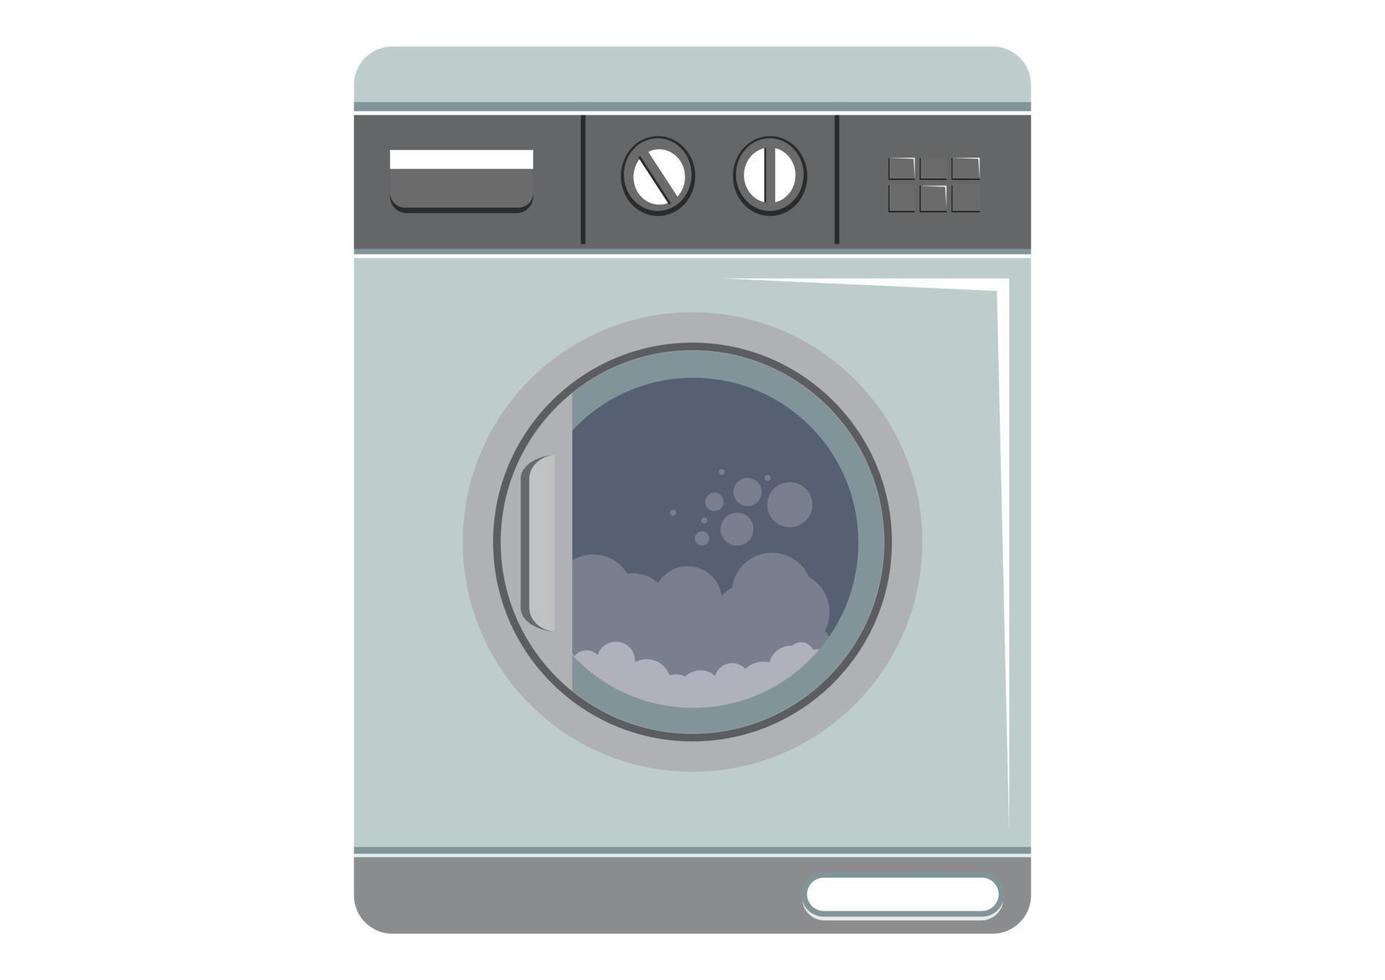 Washing machine for household chores. Modern laundry. Vector illustration of washing machine isolated on white background